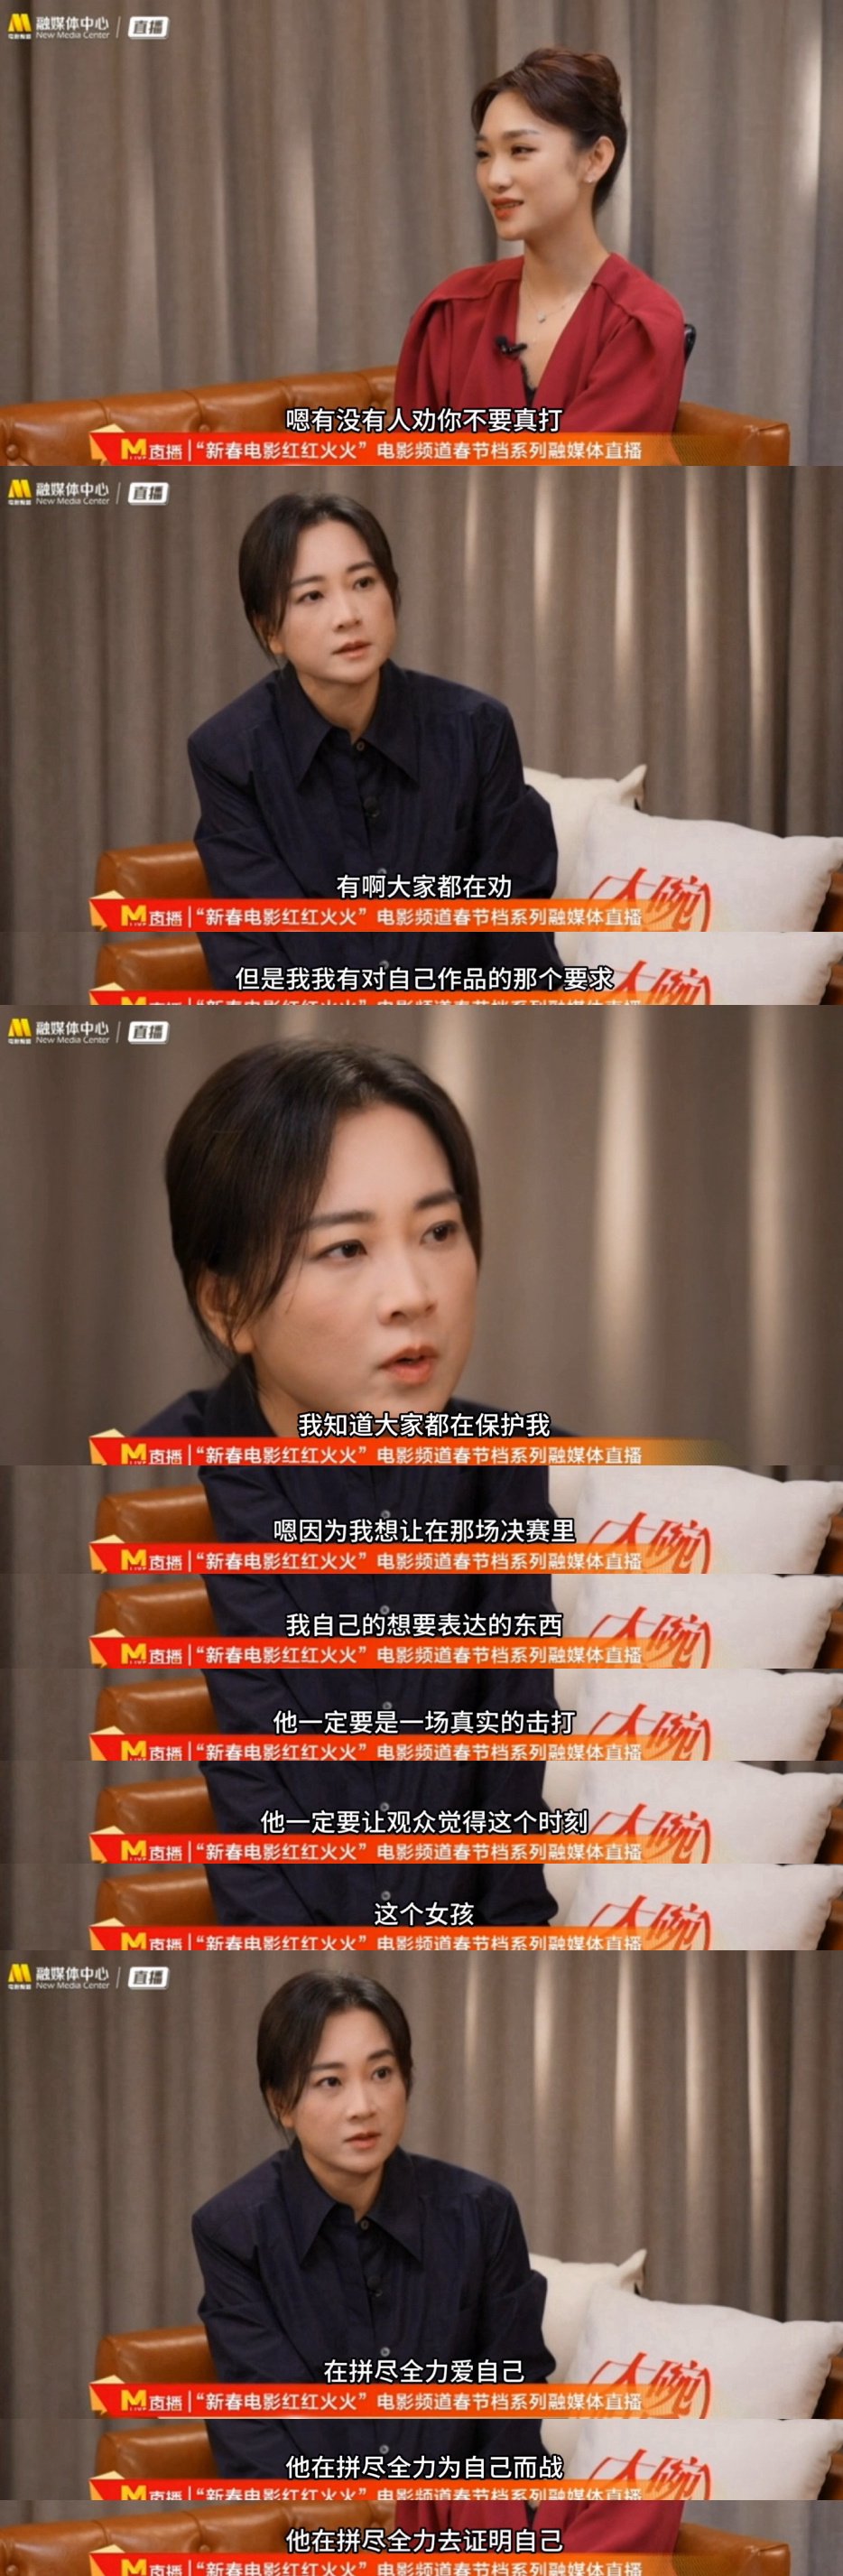 賈玲談影片主角樂瑩「為自己而戰」